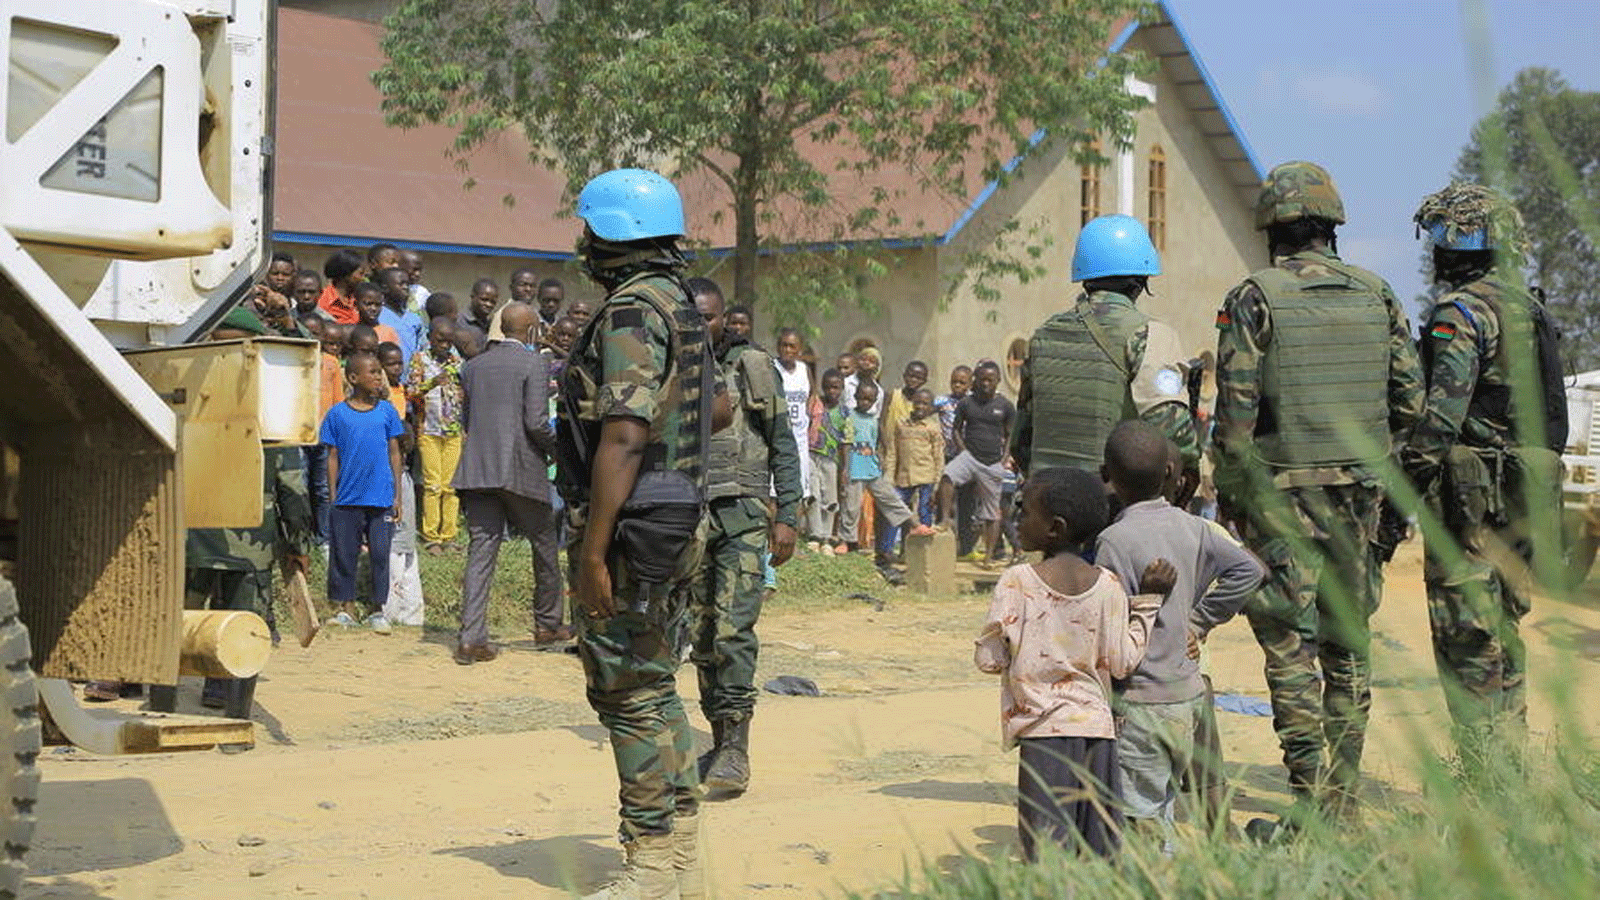 قوات حفظ السلام الملاوية في بعثة الأمم المتحدة MONUSCO تقوم بالحراسة أمام كنيسة سيباستيان بُعيد التفجير الذي وقع في 27 حزيران/يونيو 2021